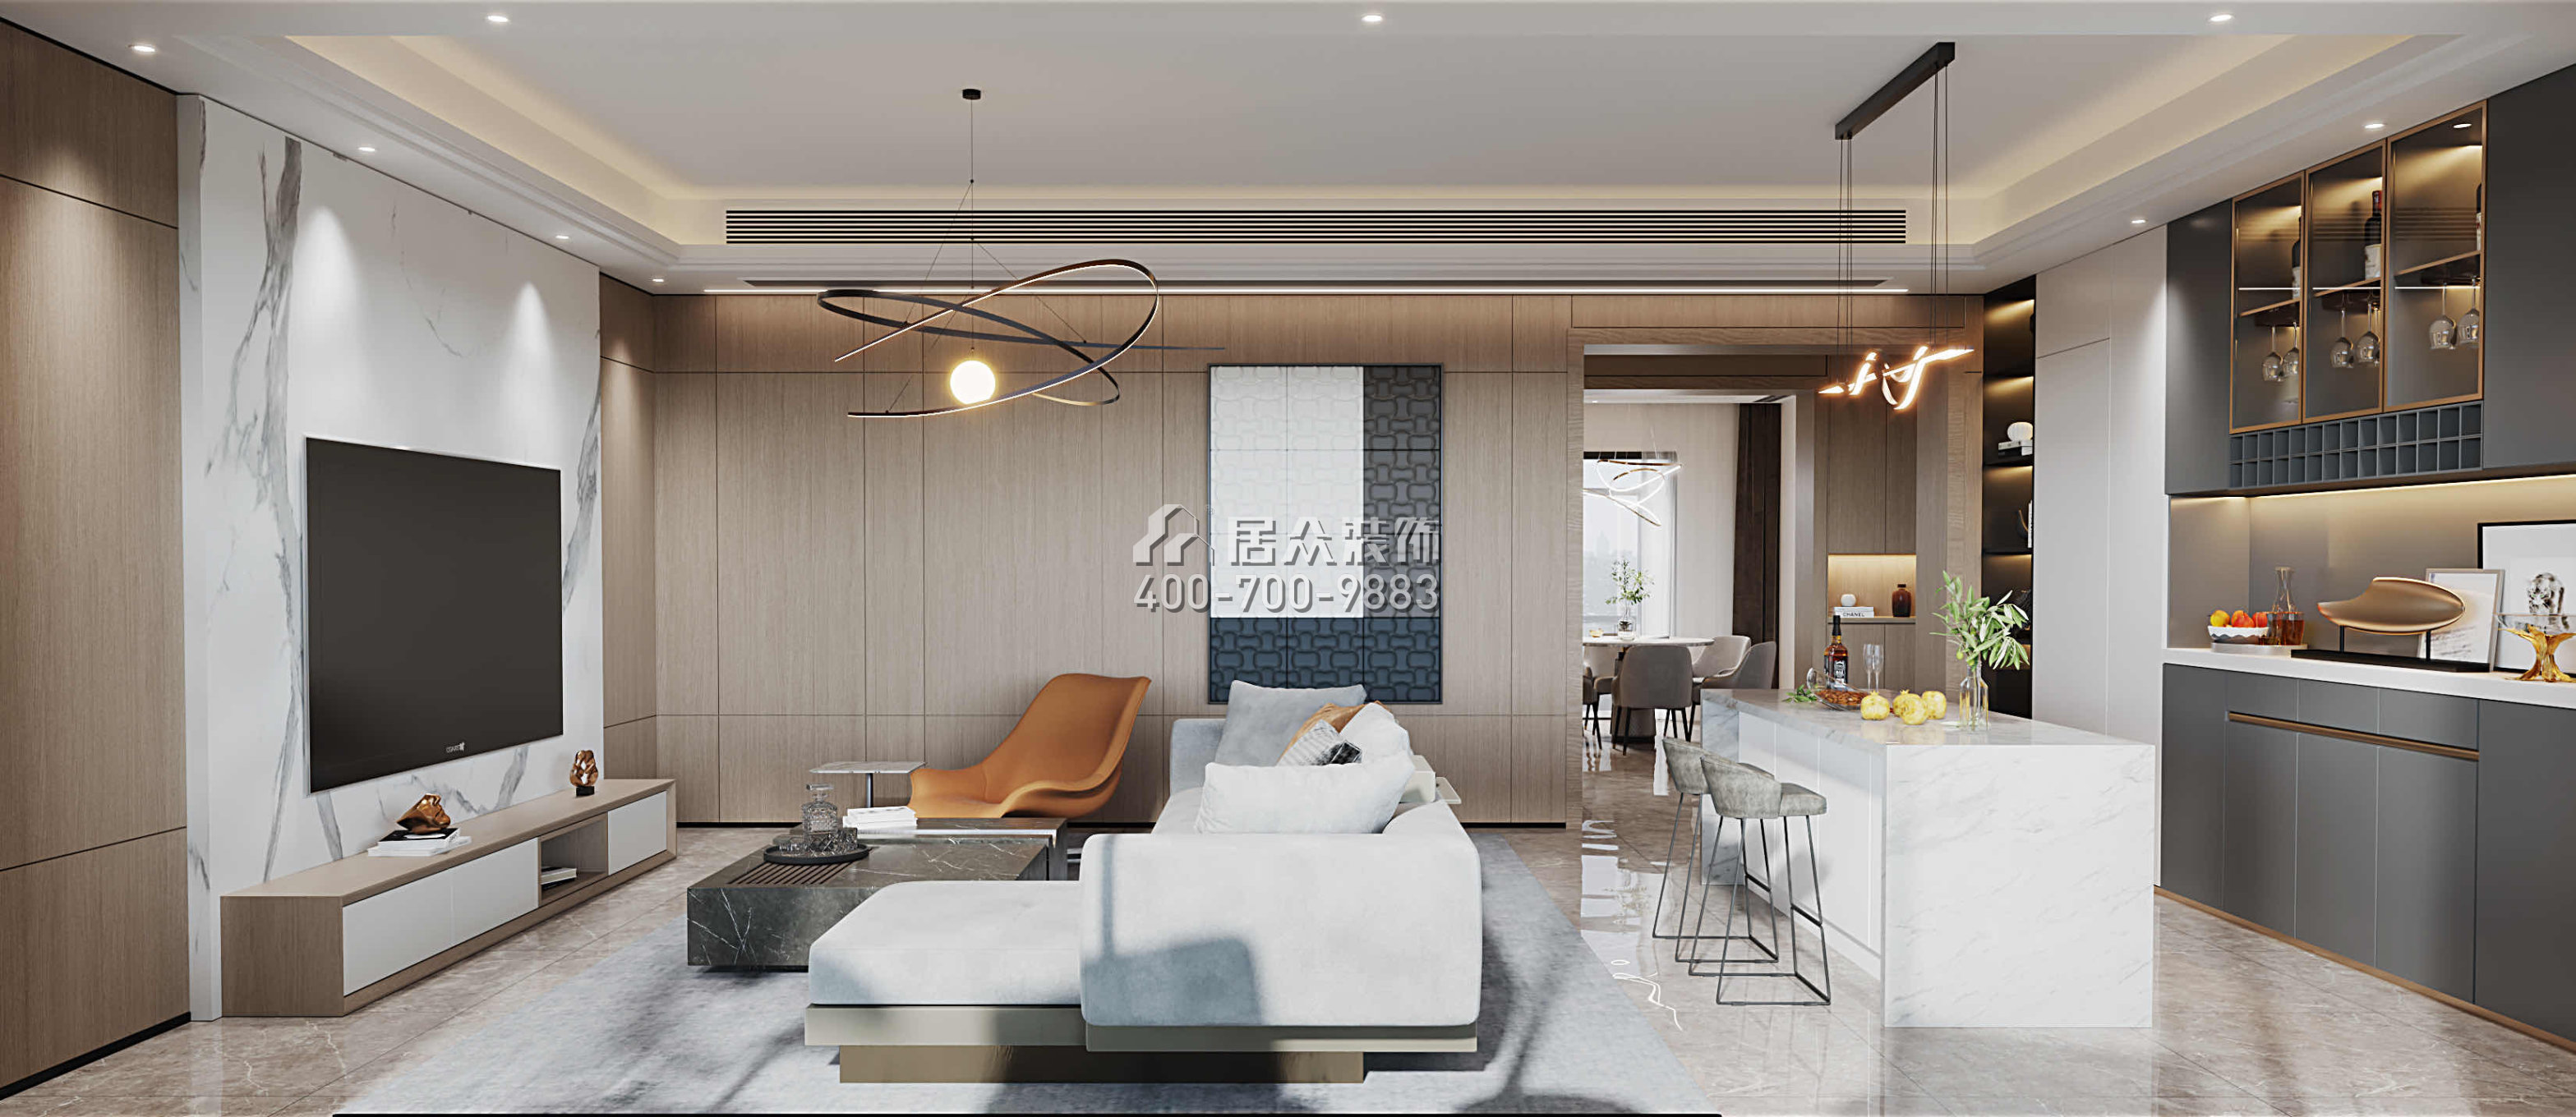 华发绿洋湾191平方米现代简约风格平层户型客厅装修效果图